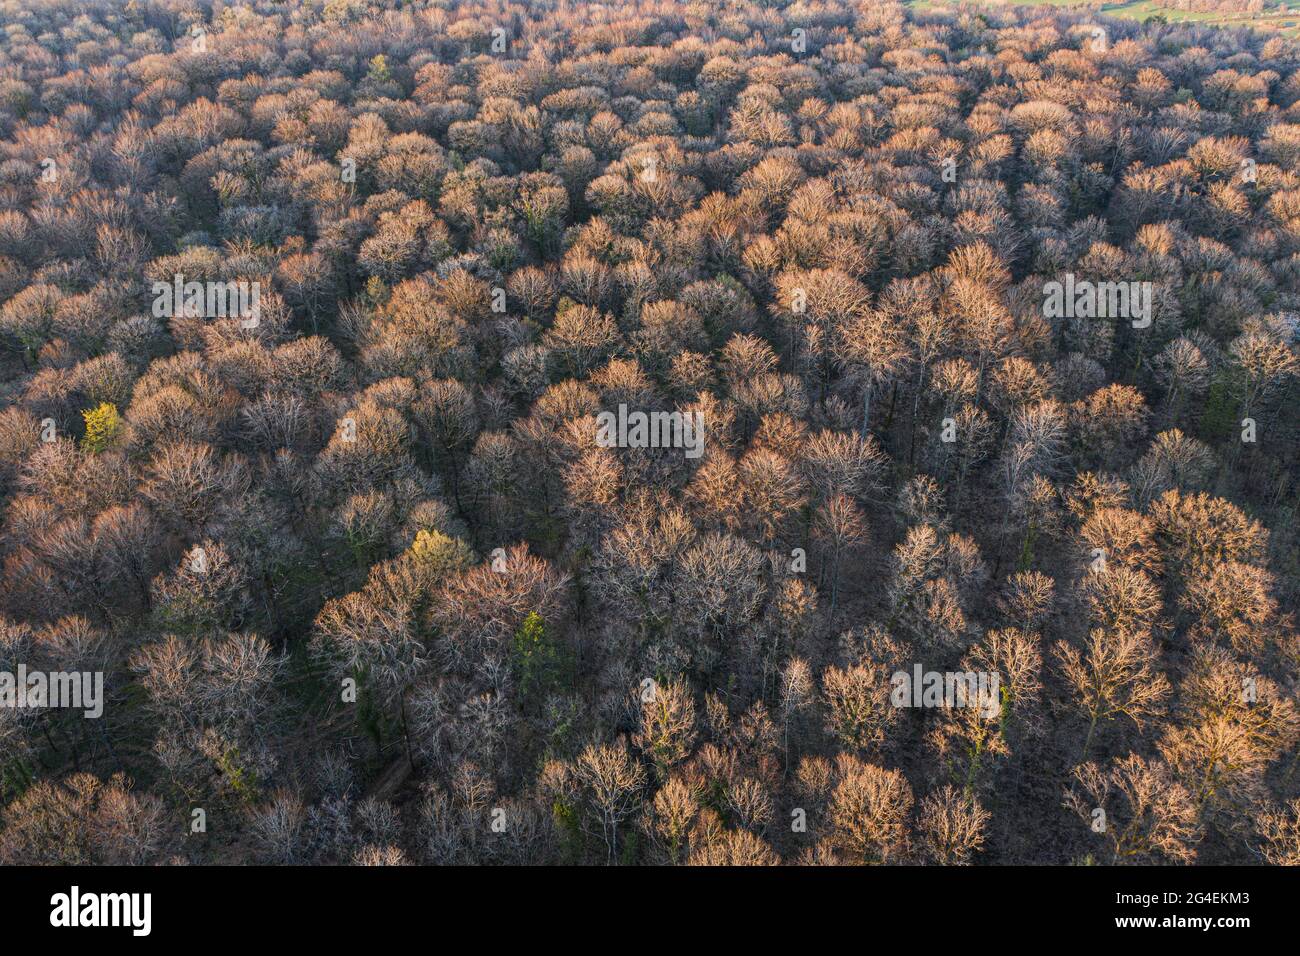 Vue de dessus de la forêt d'arbres à feuilles caduques au début du printemps Banque D'Images